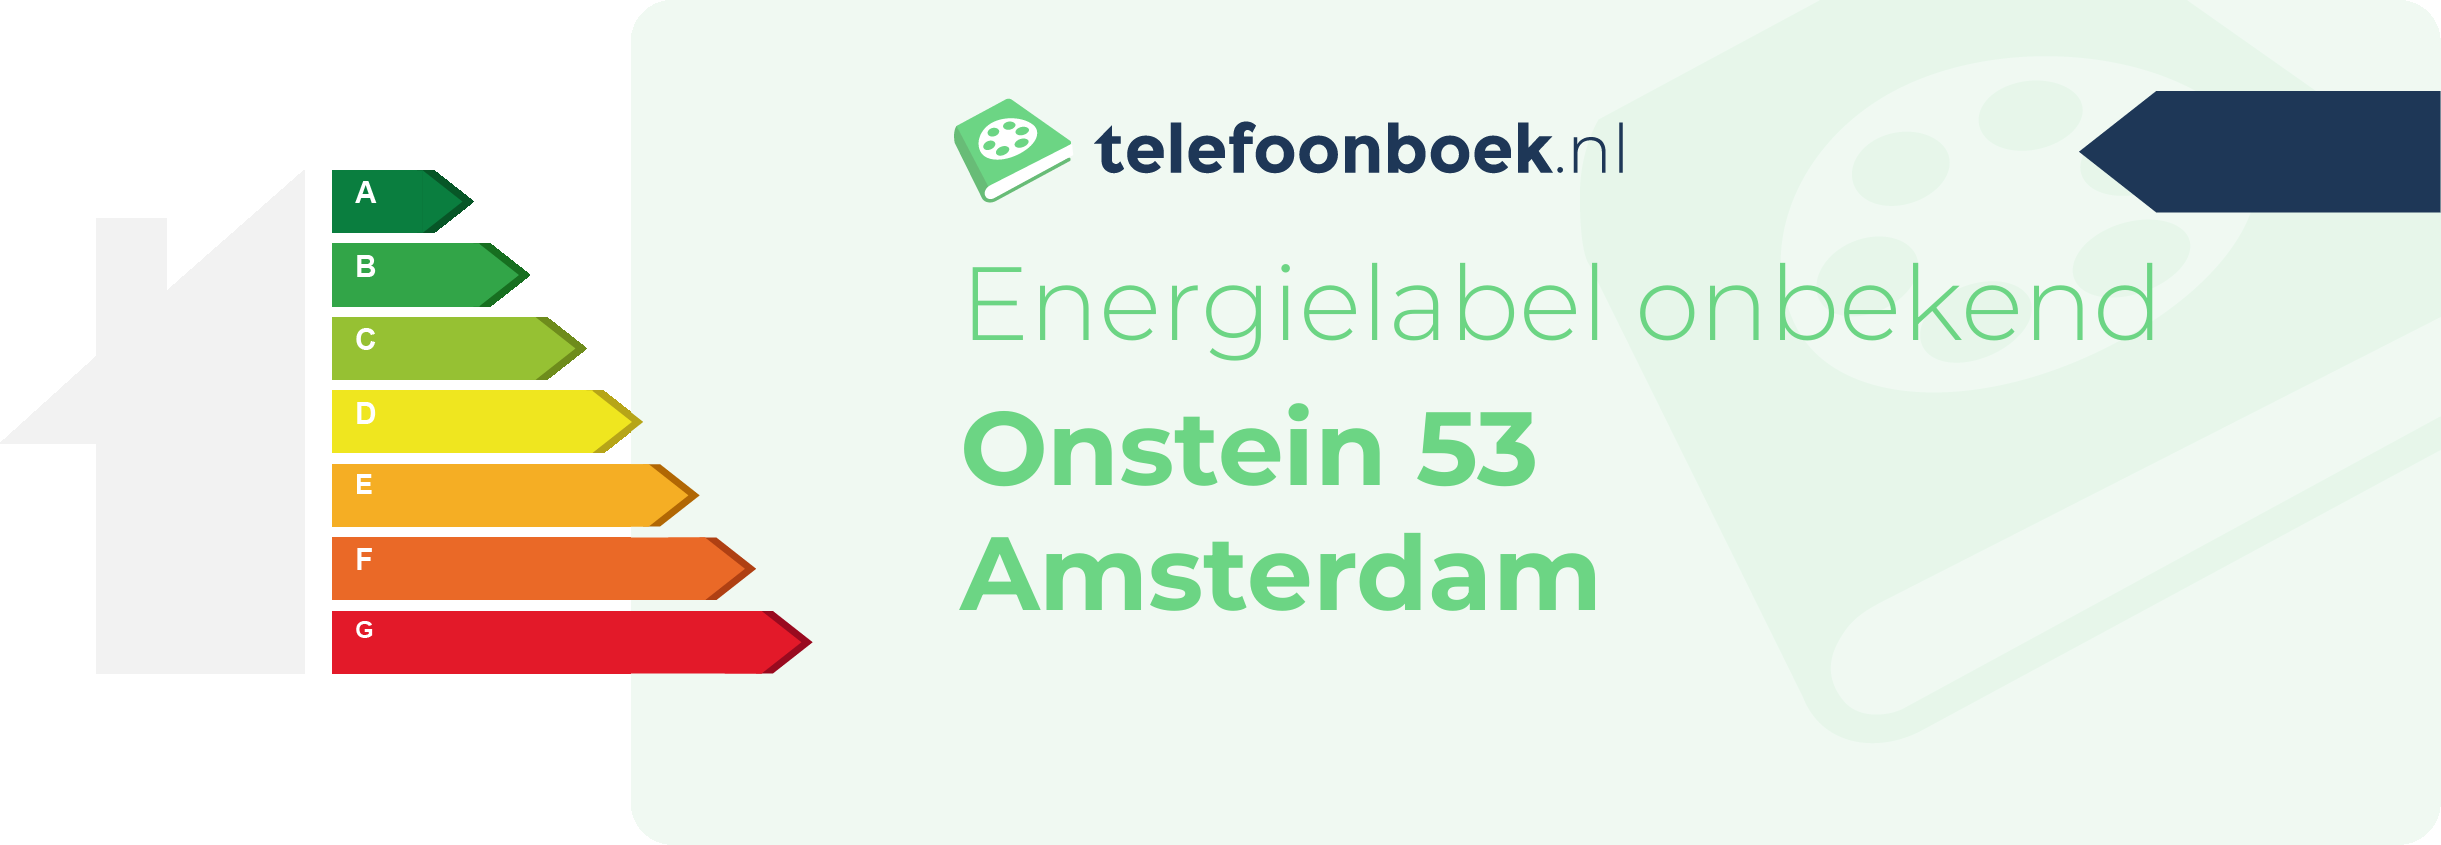 Energielabel Onstein 53 Amsterdam